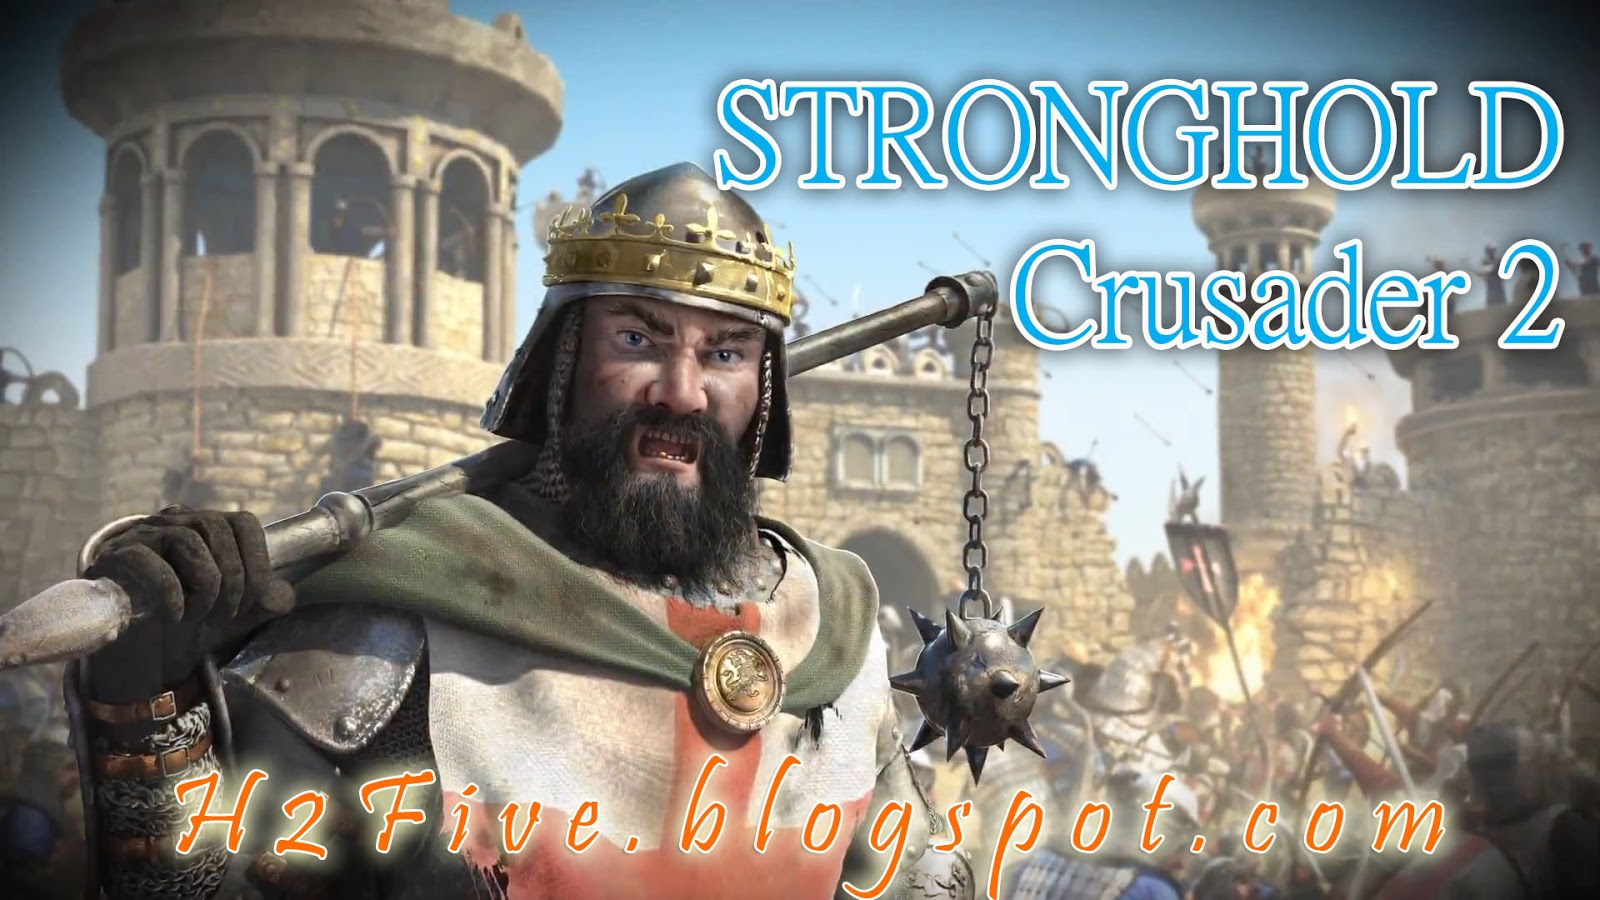 Download game stronghold crusader 3 highly compressed download